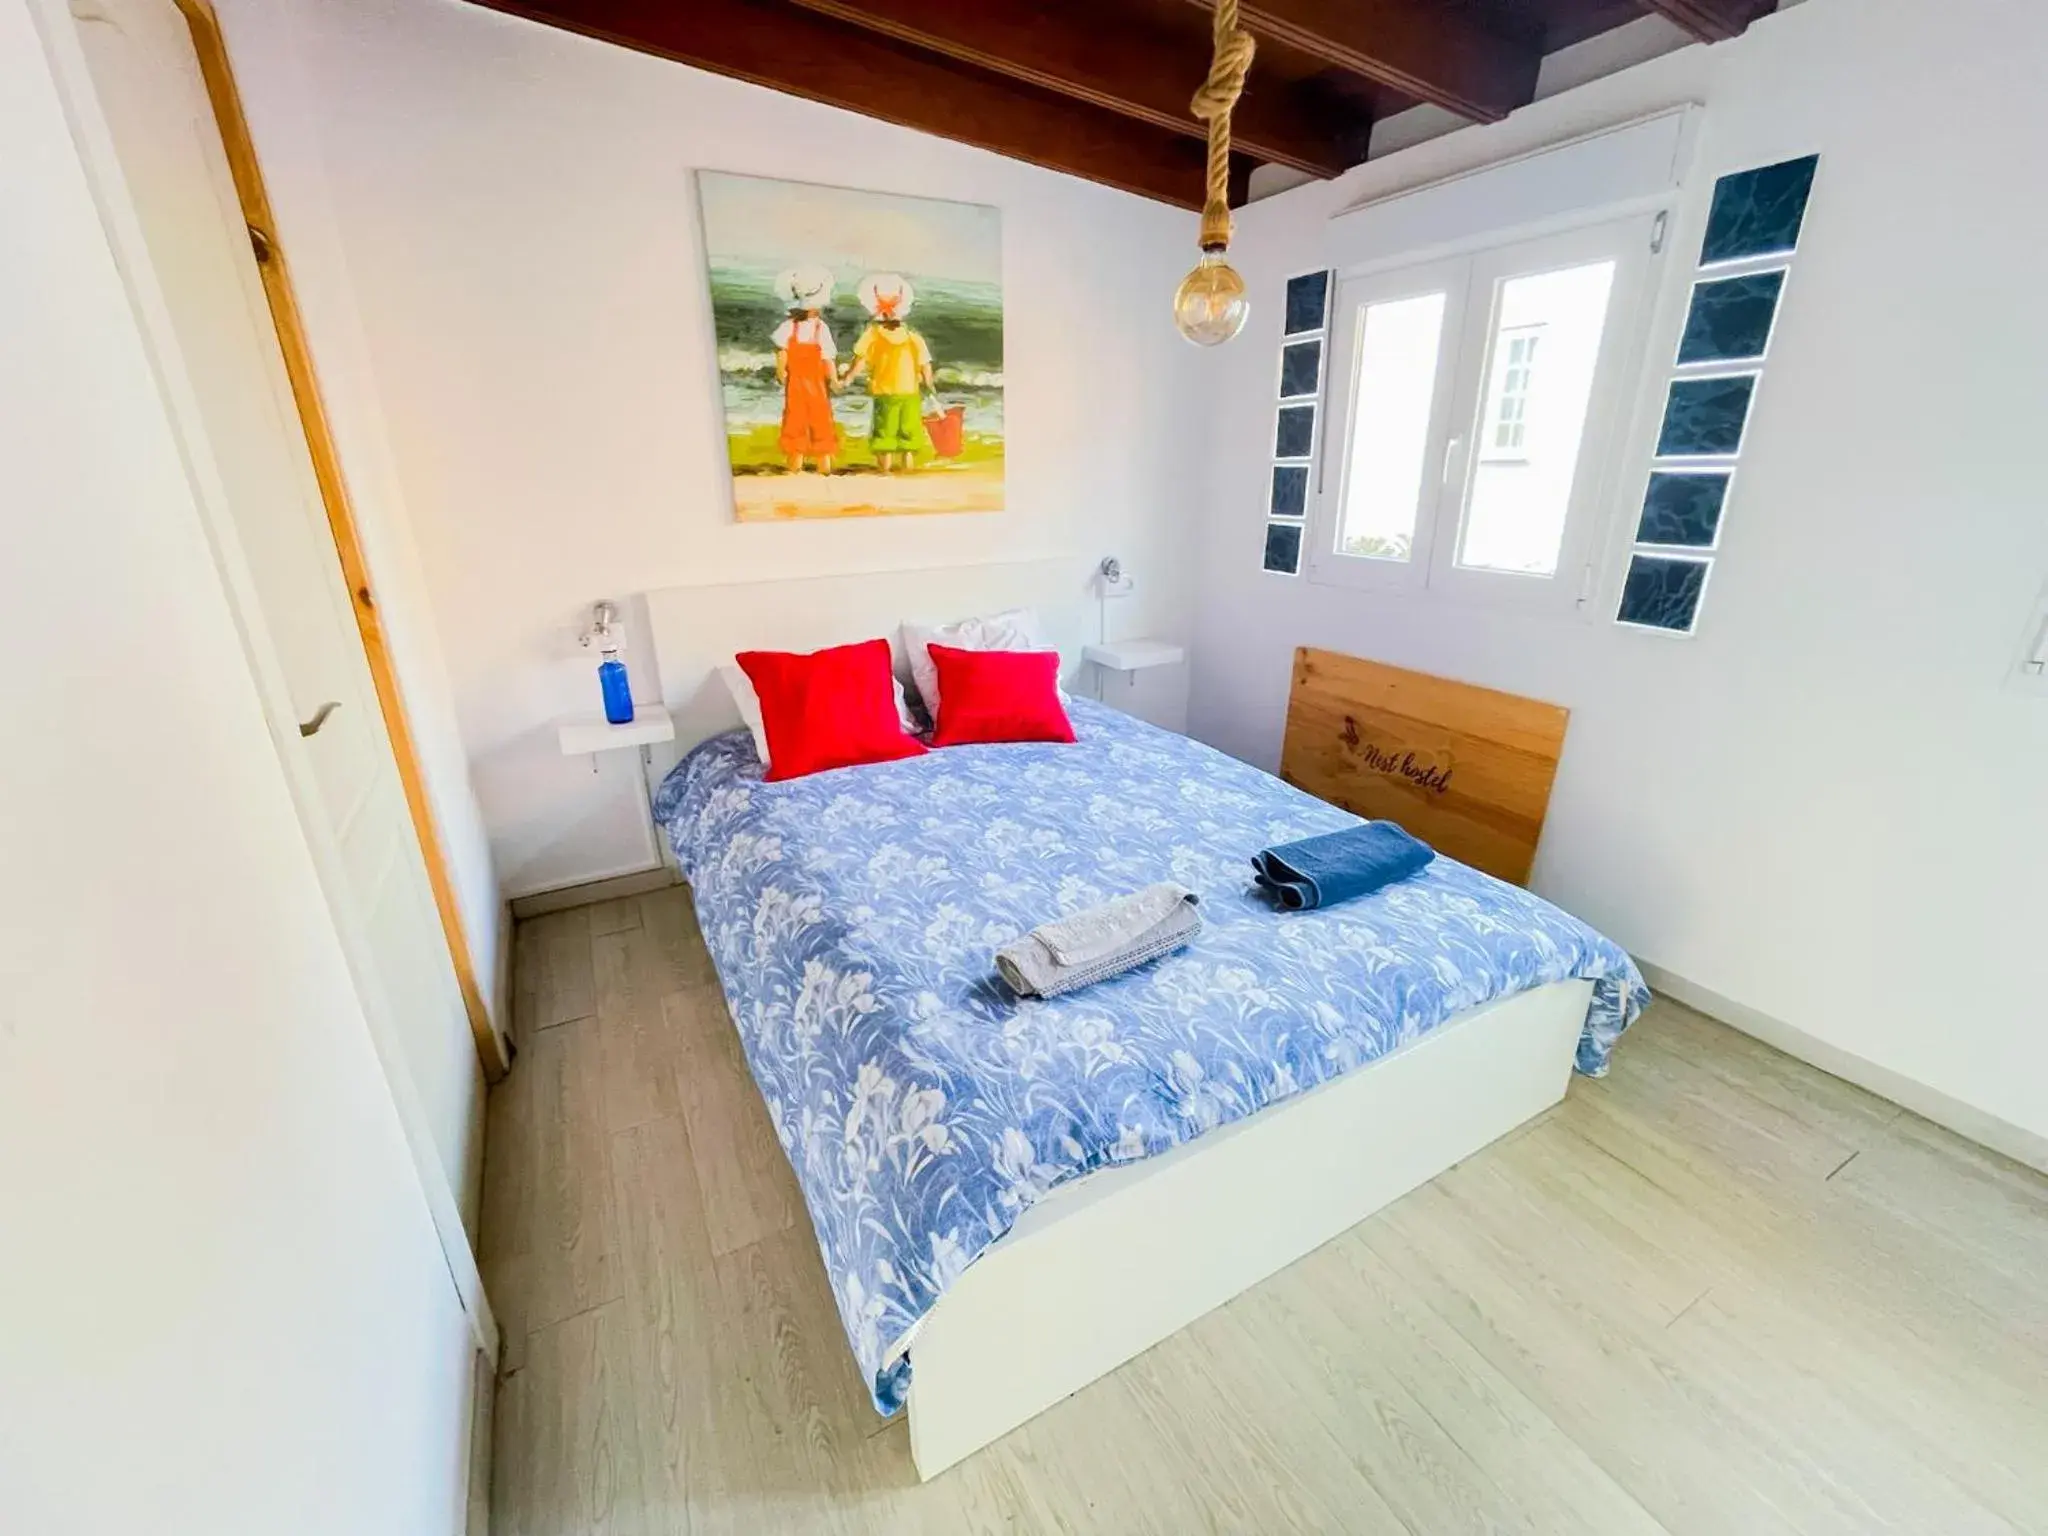 Bed in Puerto Nest Hostel